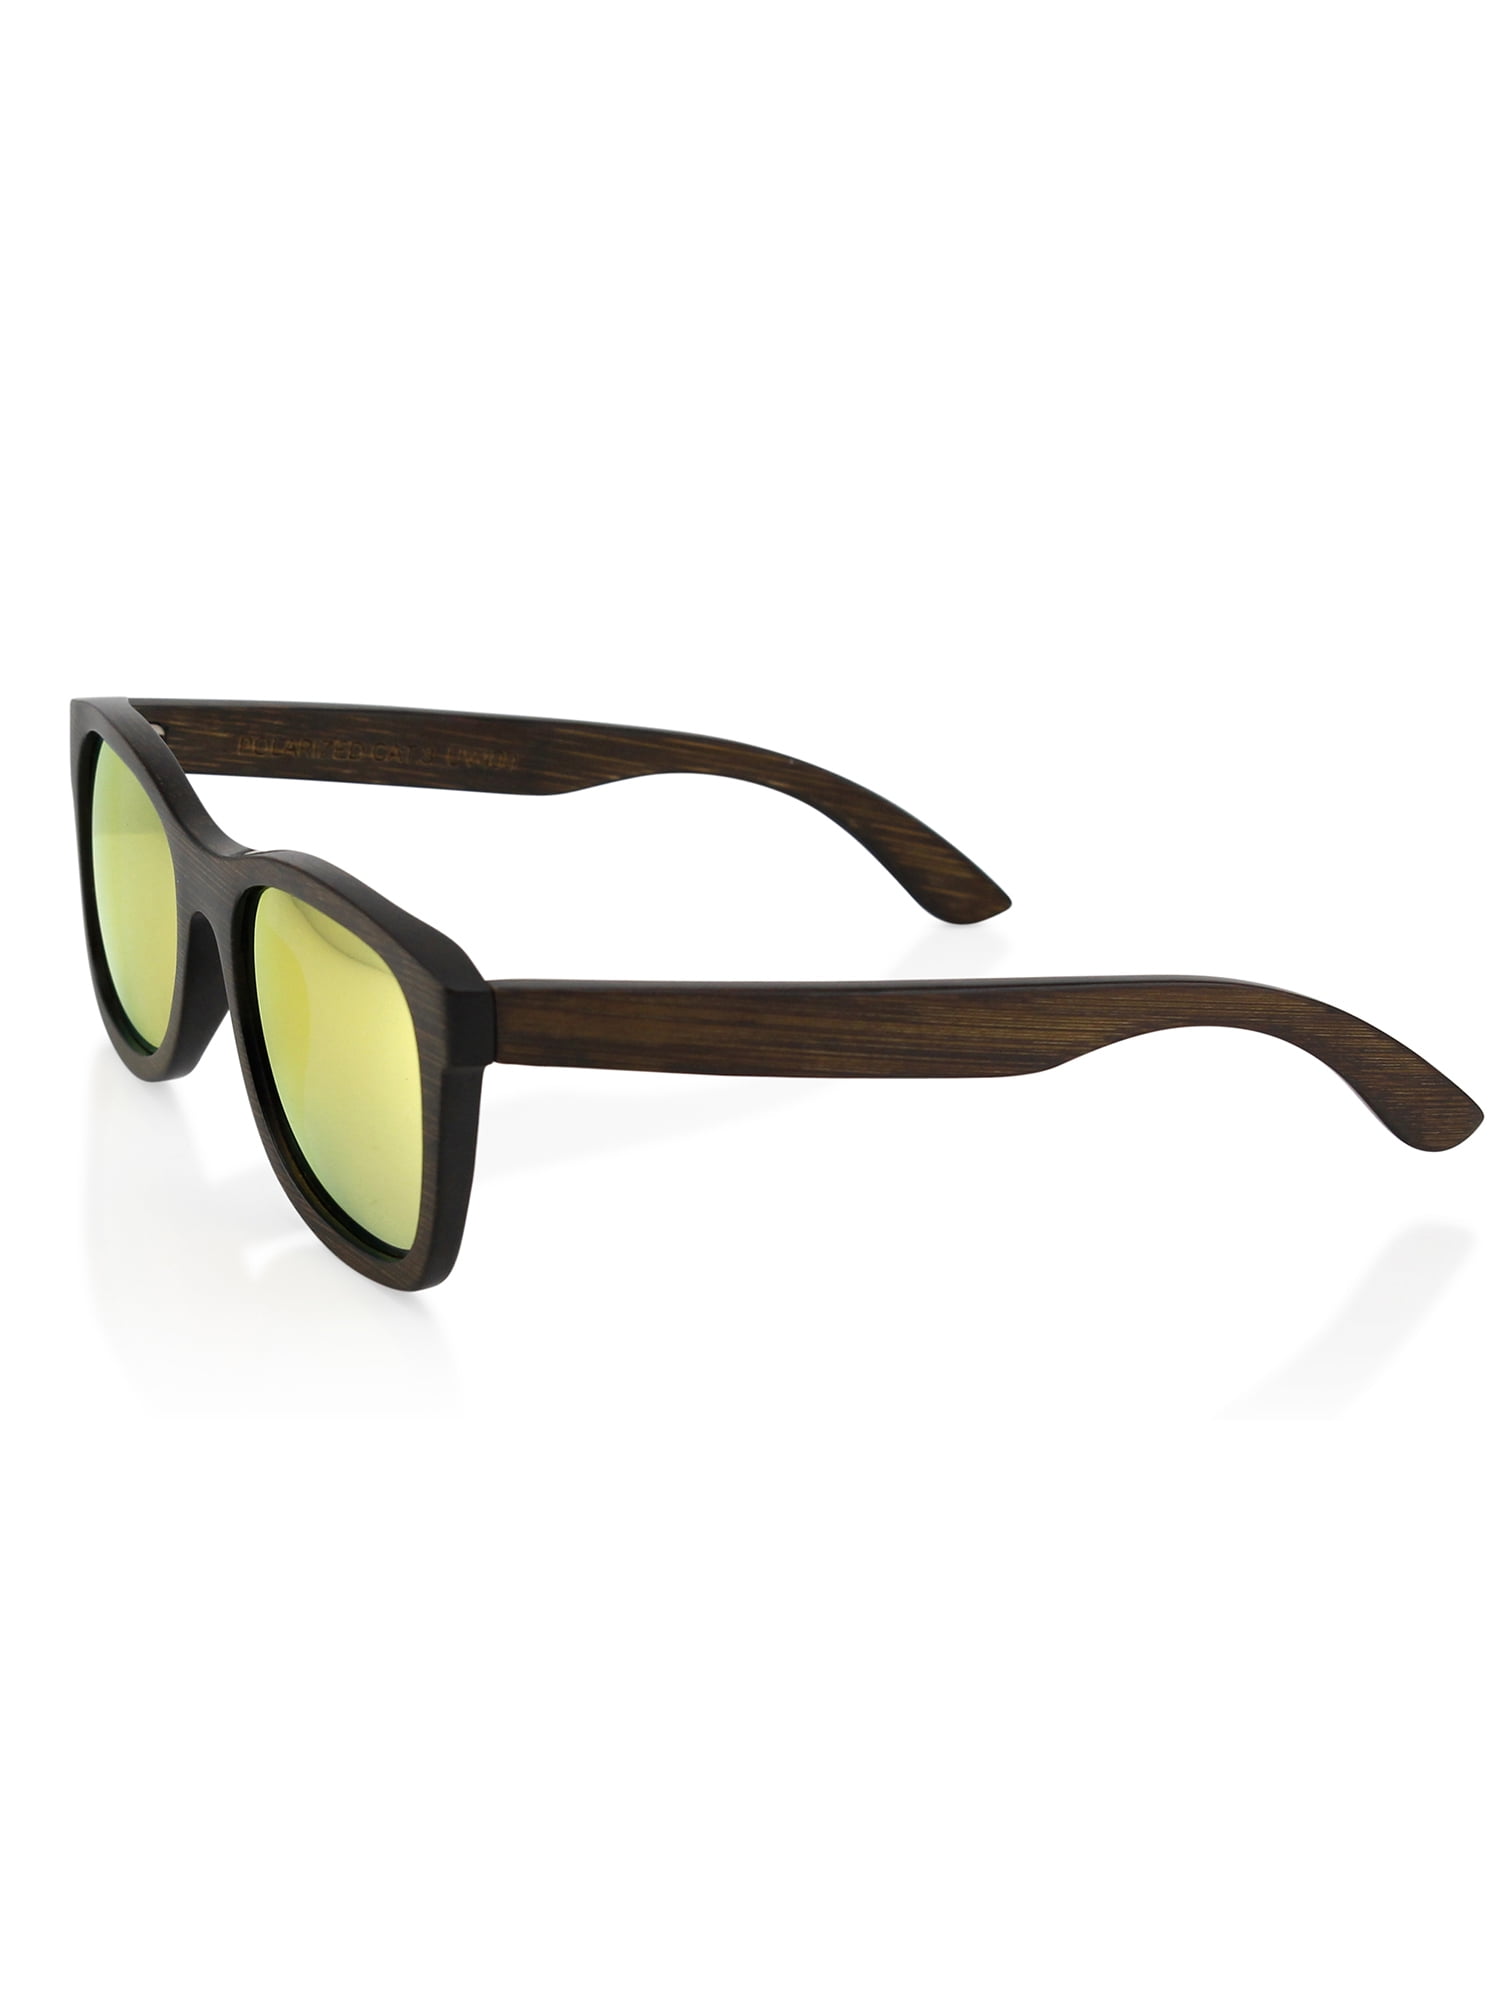 New Wooden BAMBOO Vintage Style Sunglasses Polarized Smoke Lens Wood Black c 